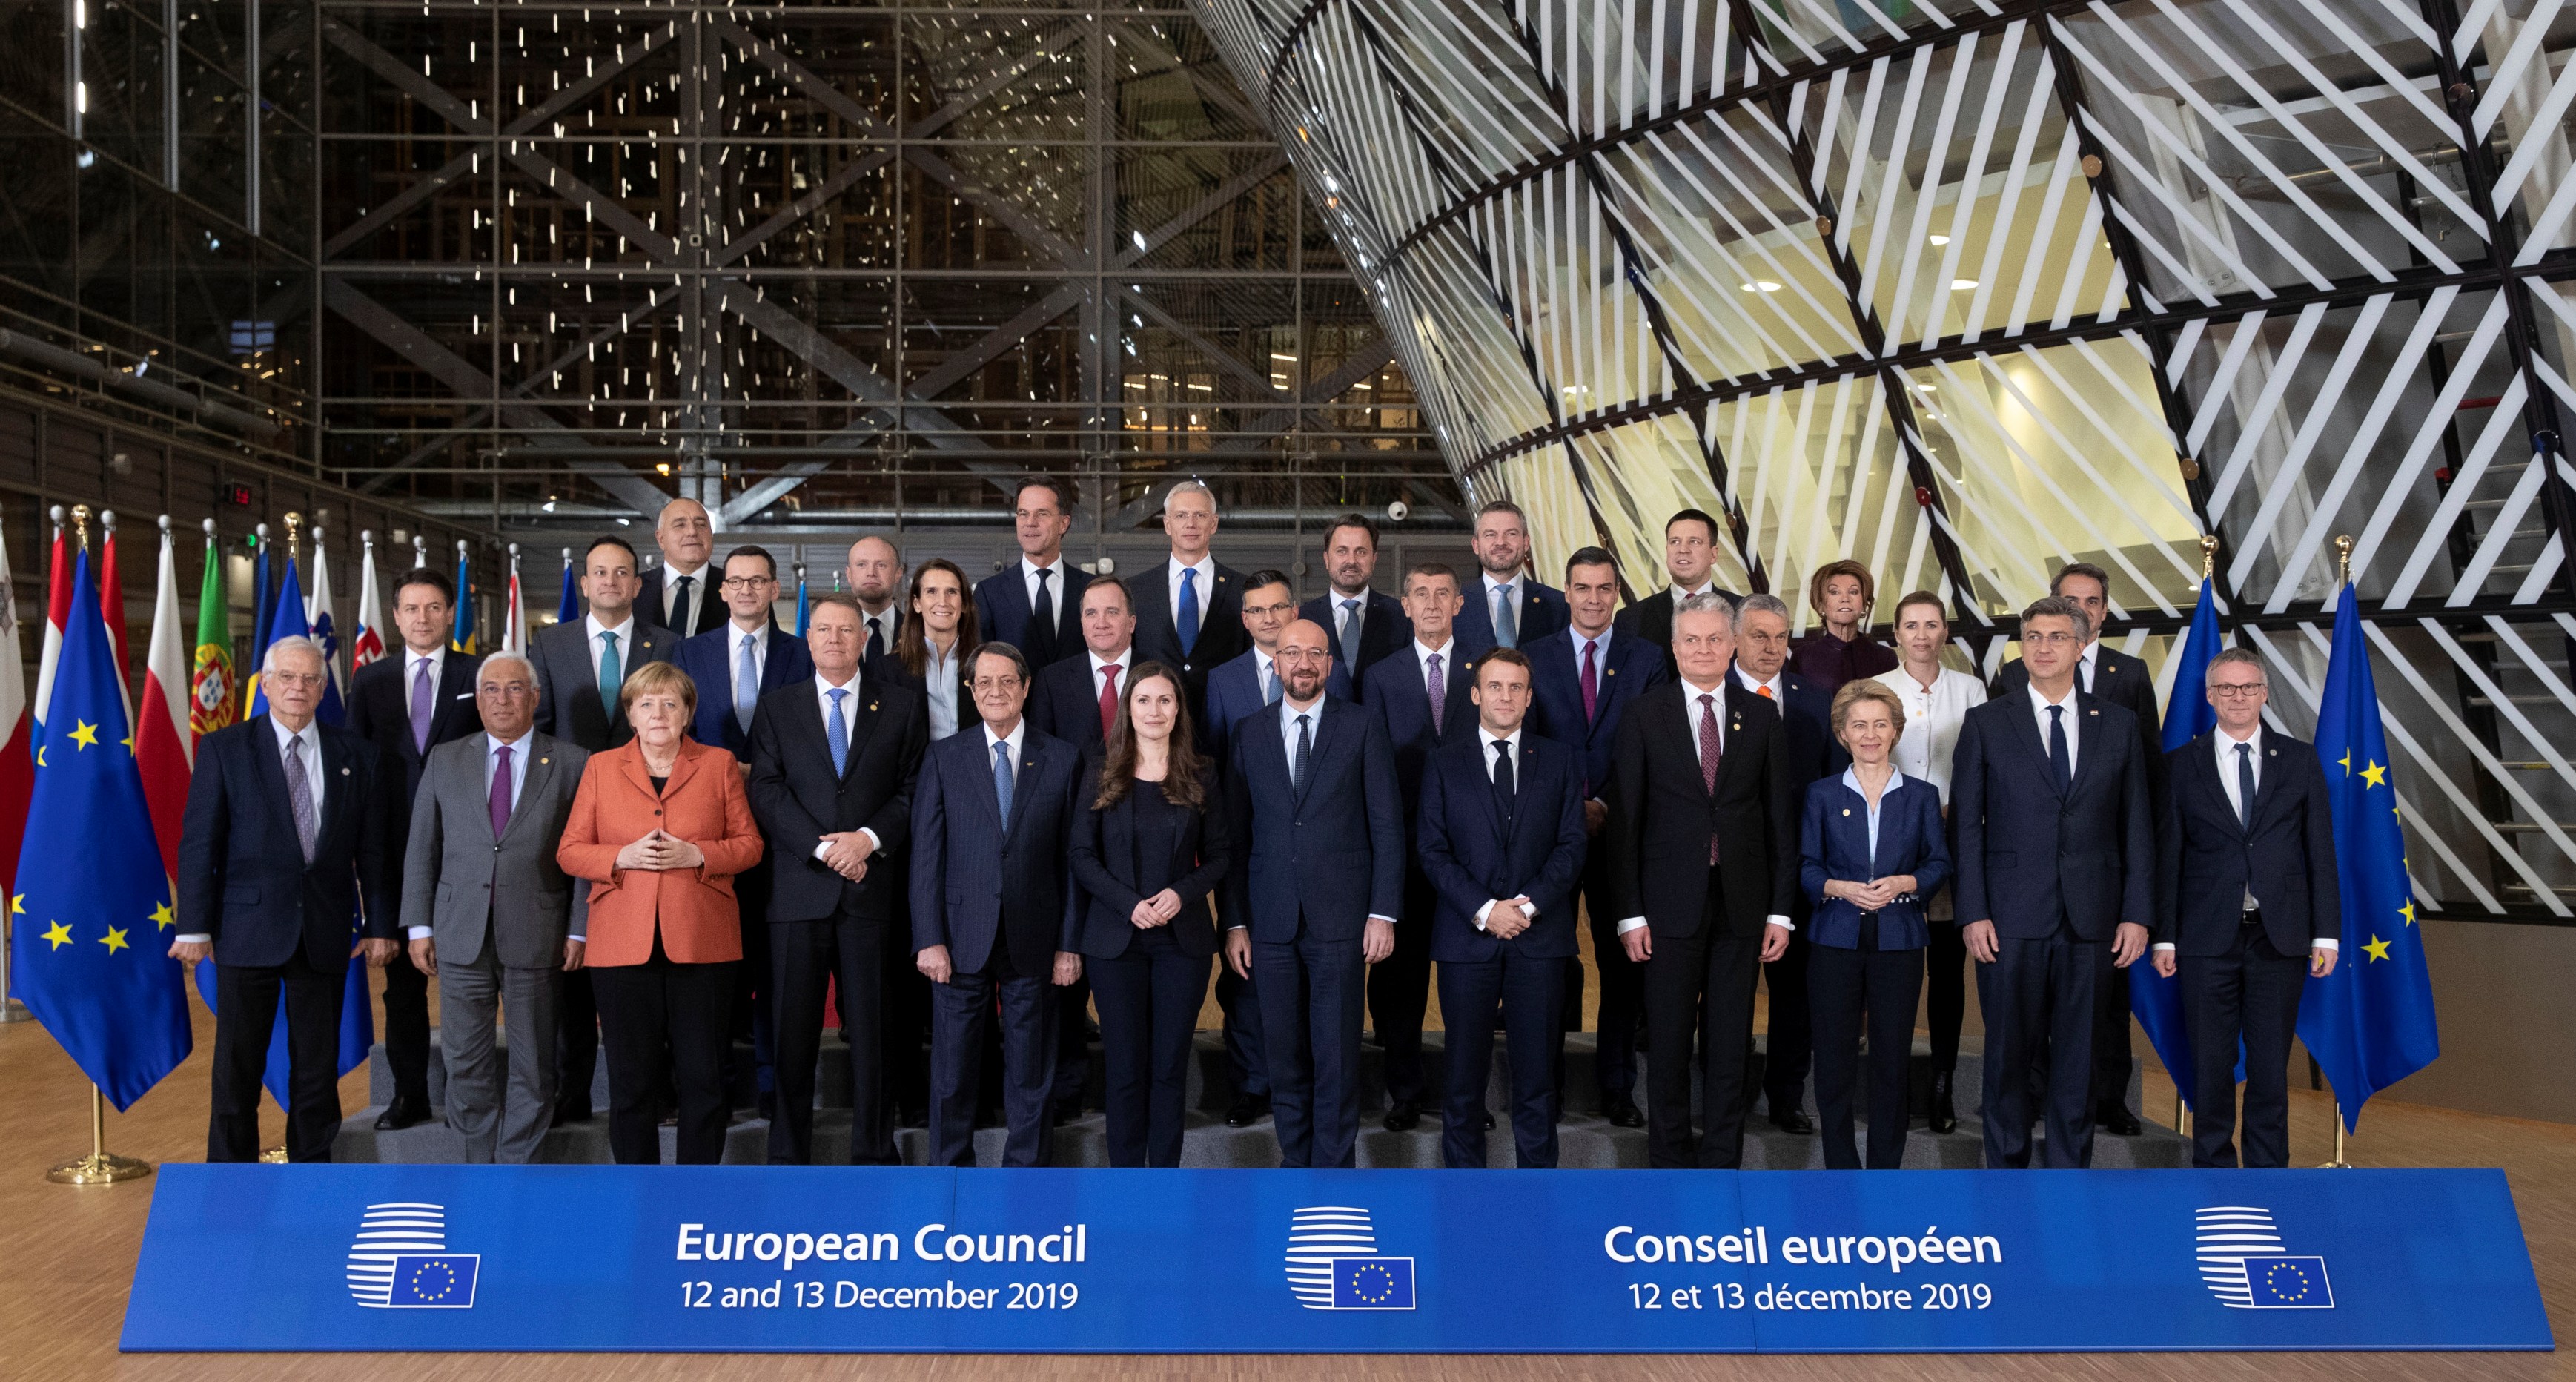 زعماء الاتحاد الأوروبي في صورة جماعية